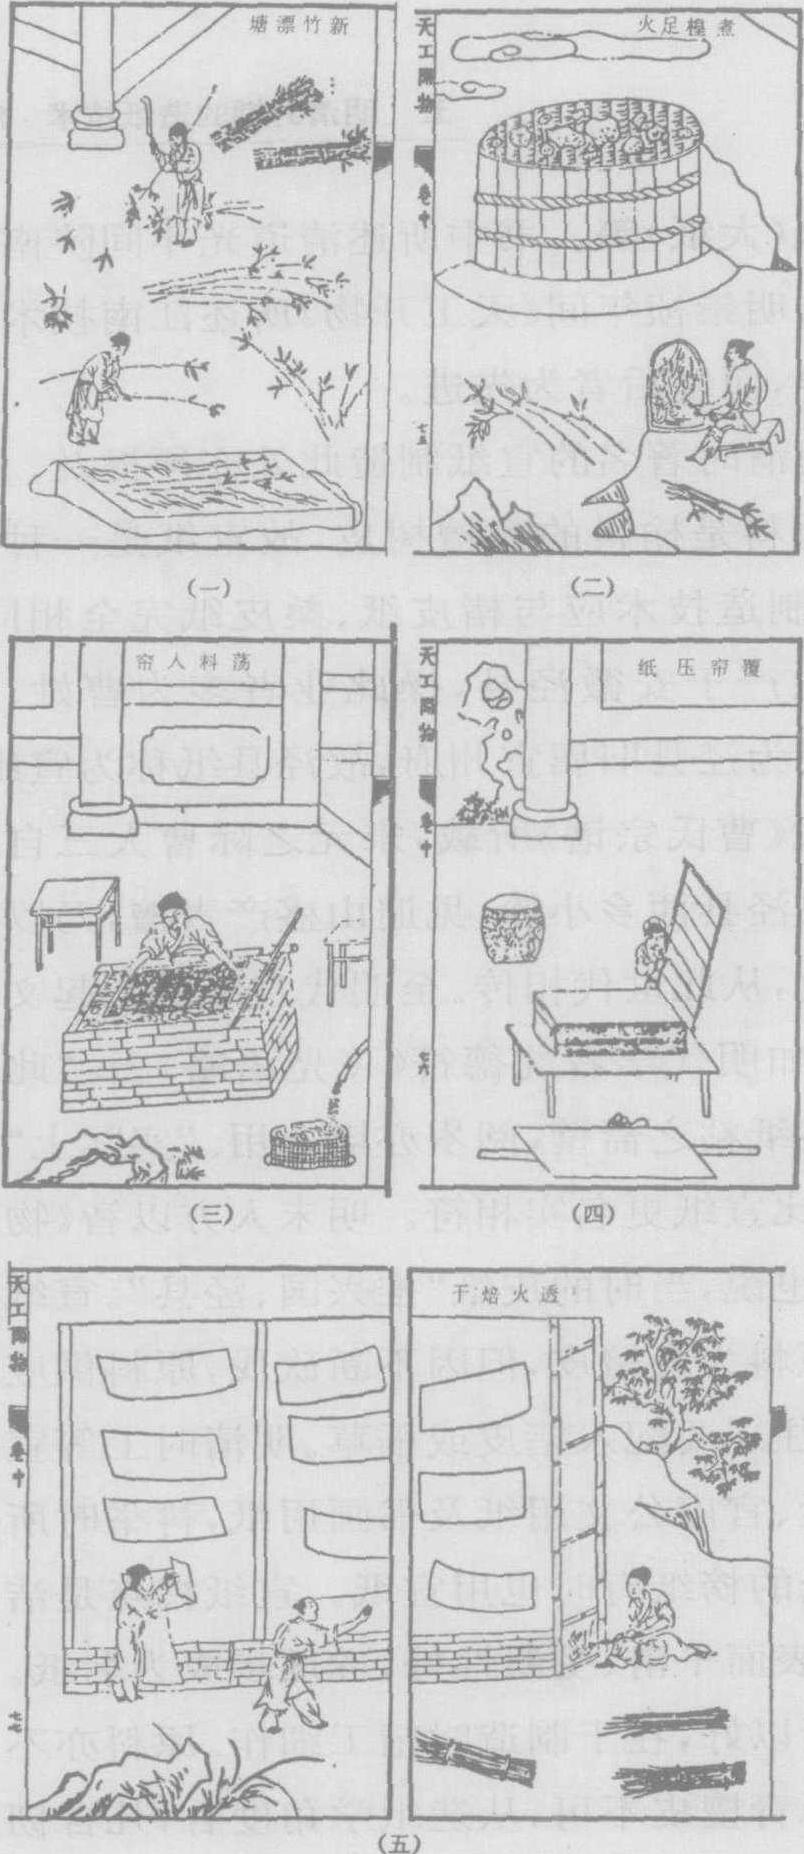 五 明清时期的造纸技术